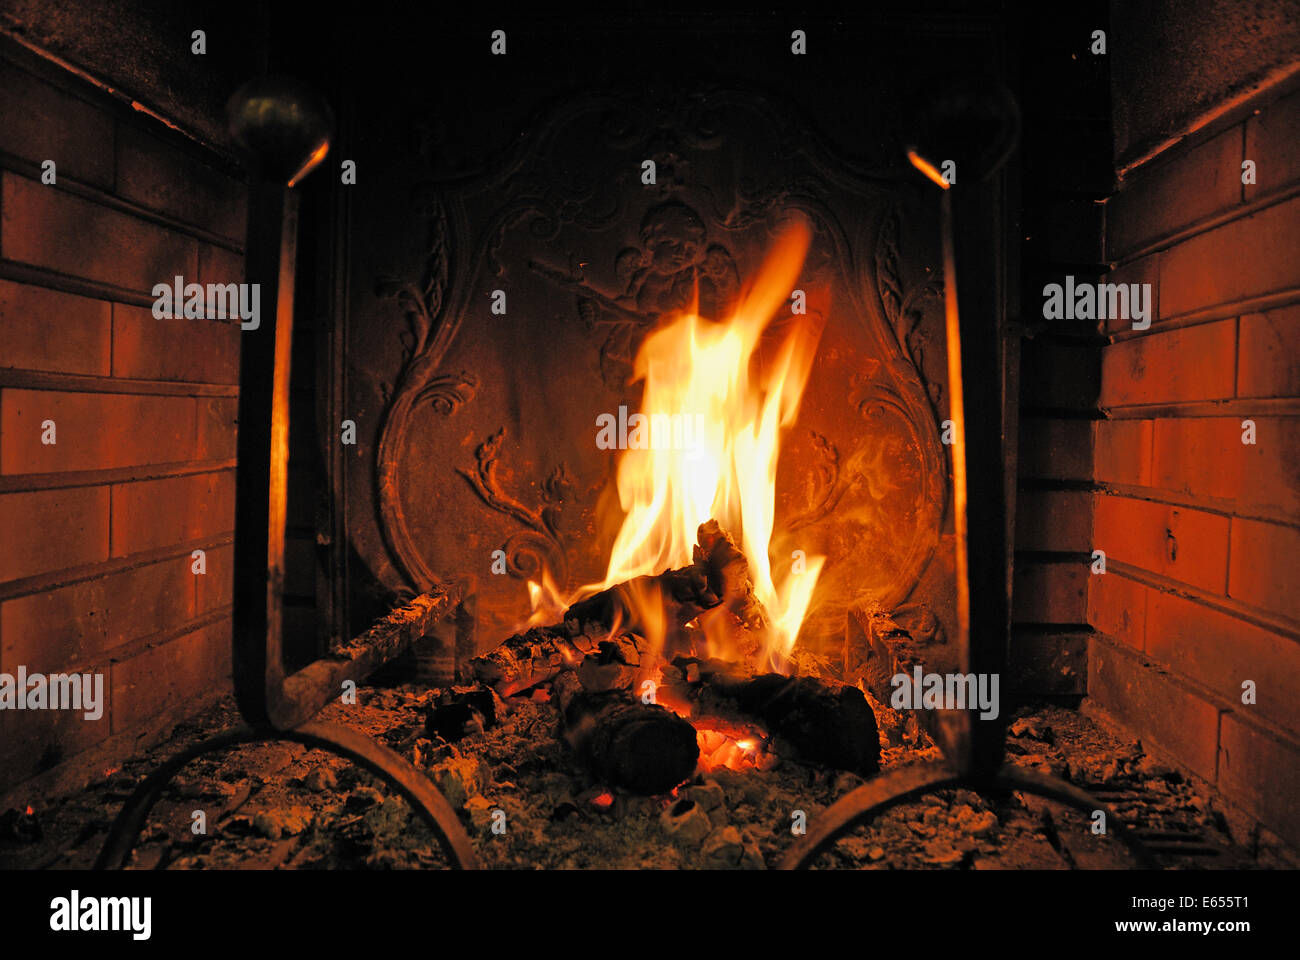 Feu de bois brûlant dans une cheminée Banque D'Images